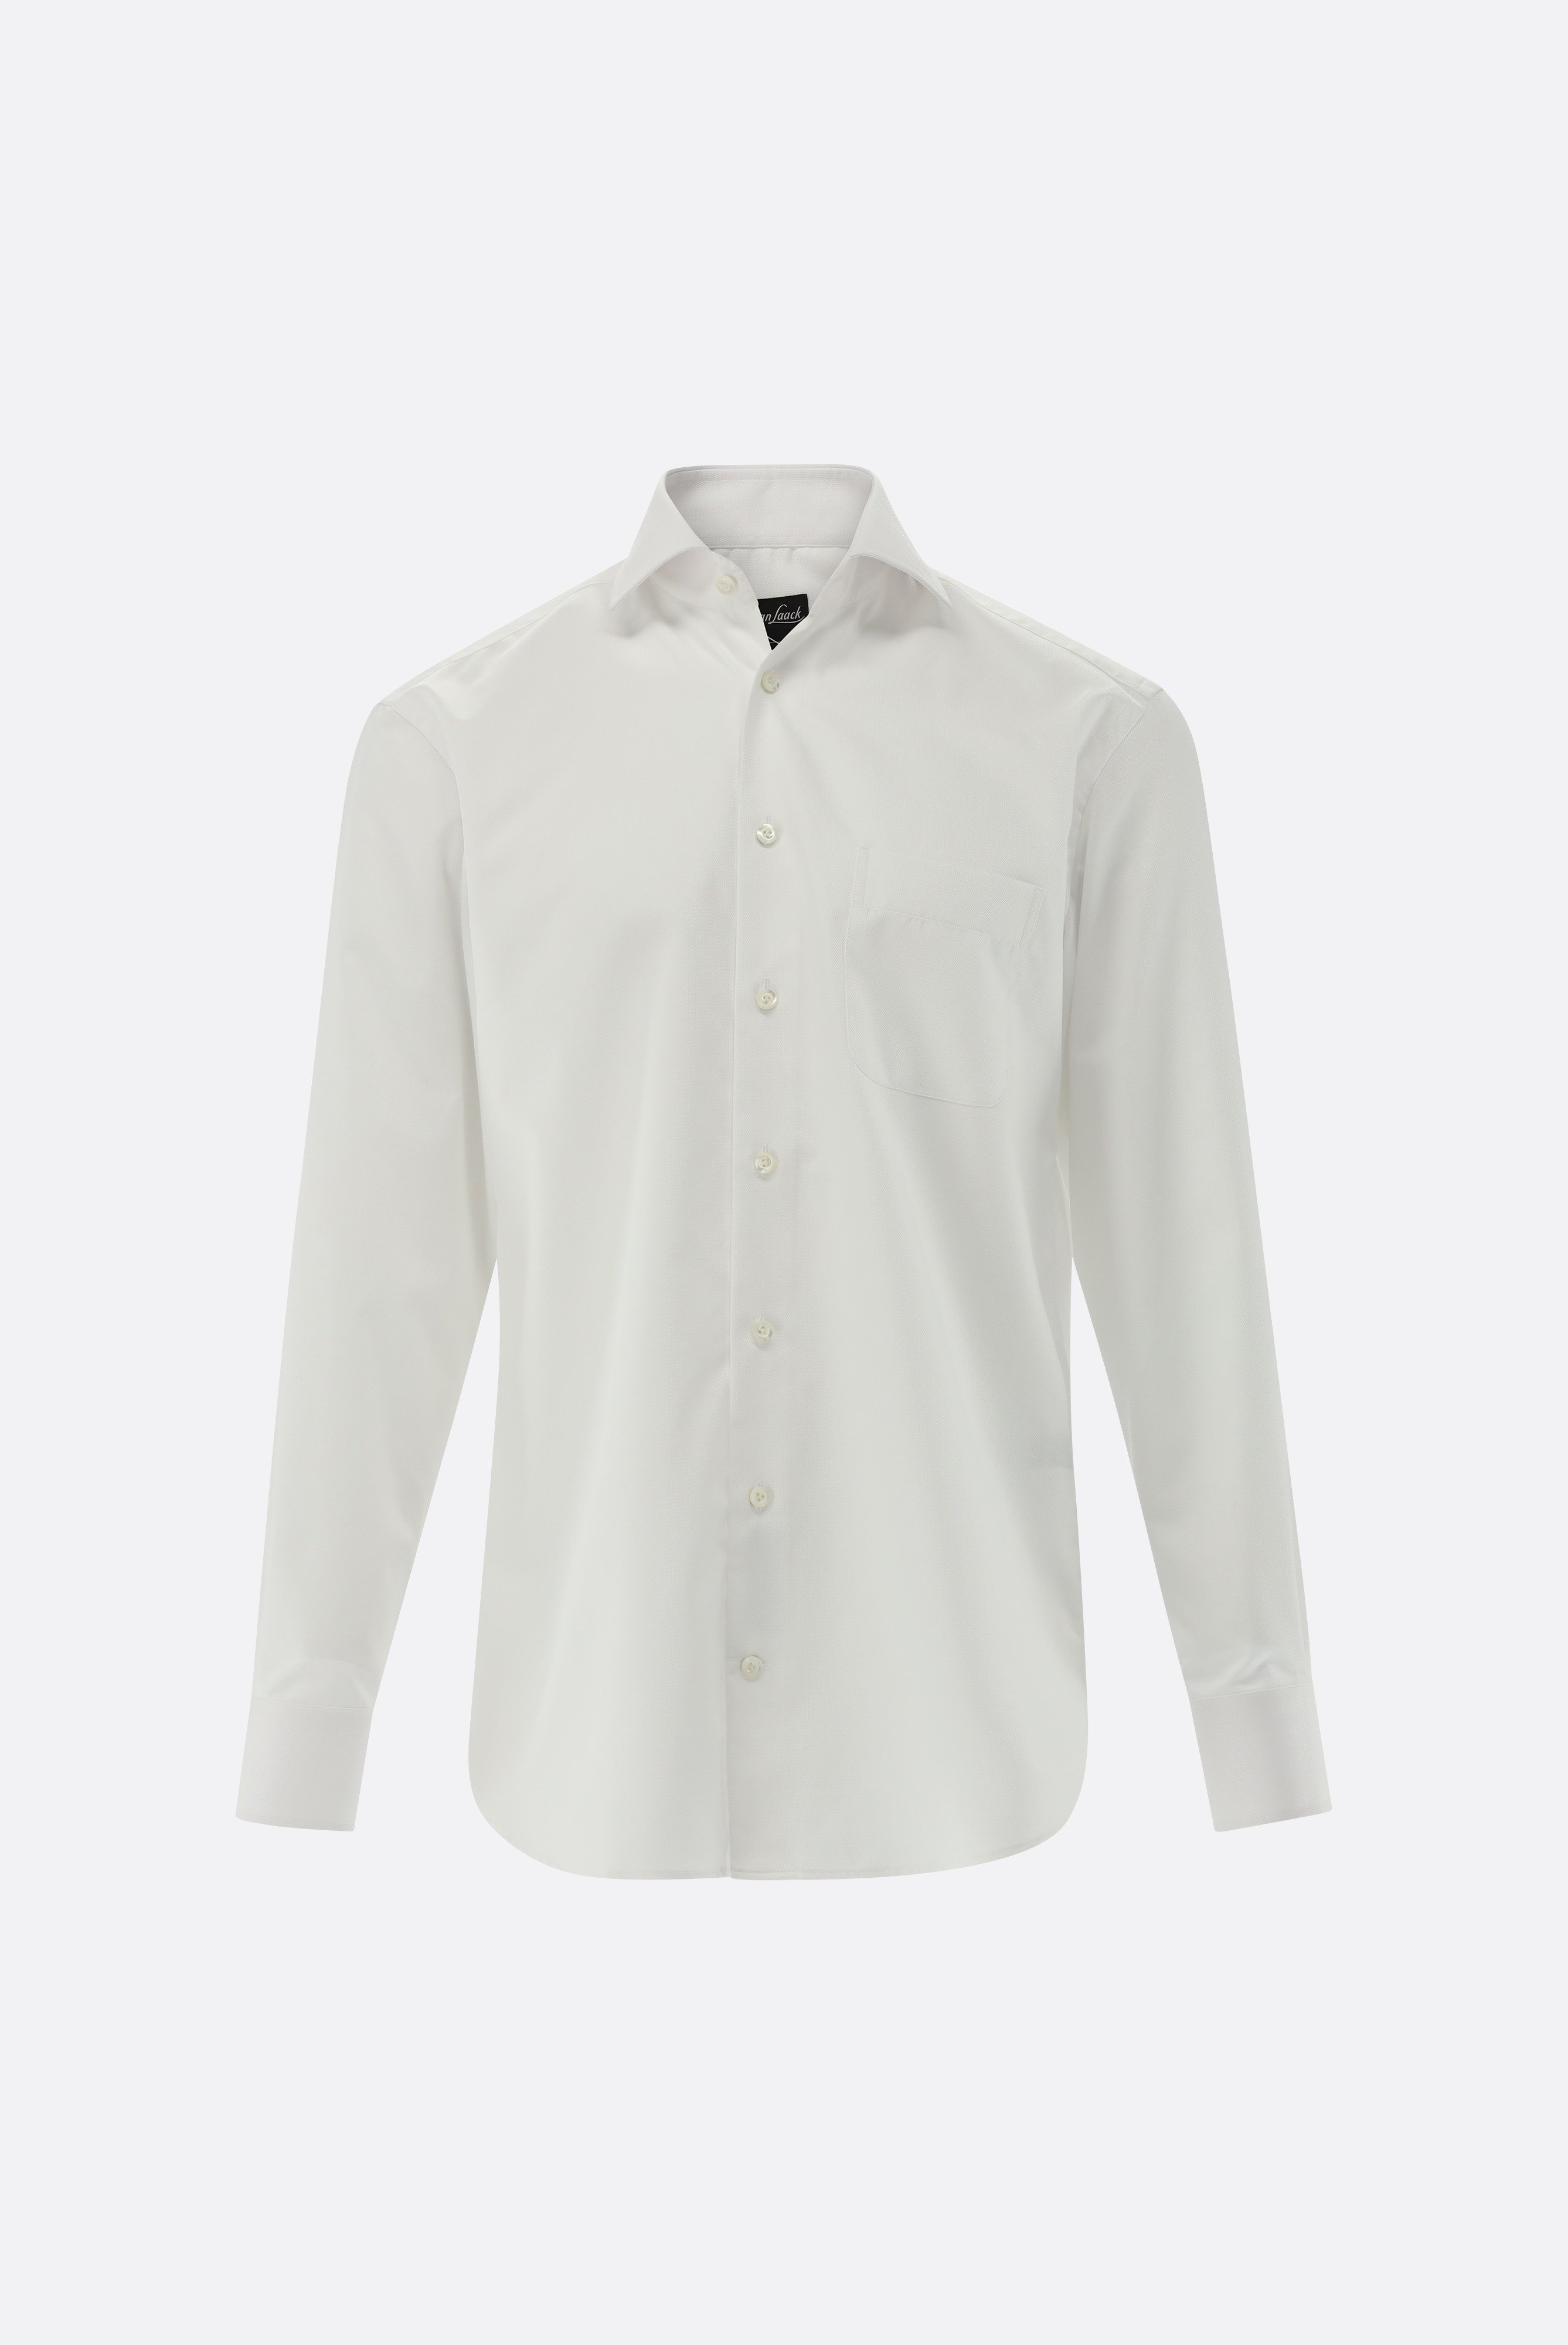 Bügelleichte Hemden+Bügelfreies Twil Hemd mit Struktur Comfort Fit+20.2021.BQ.150301.000.45